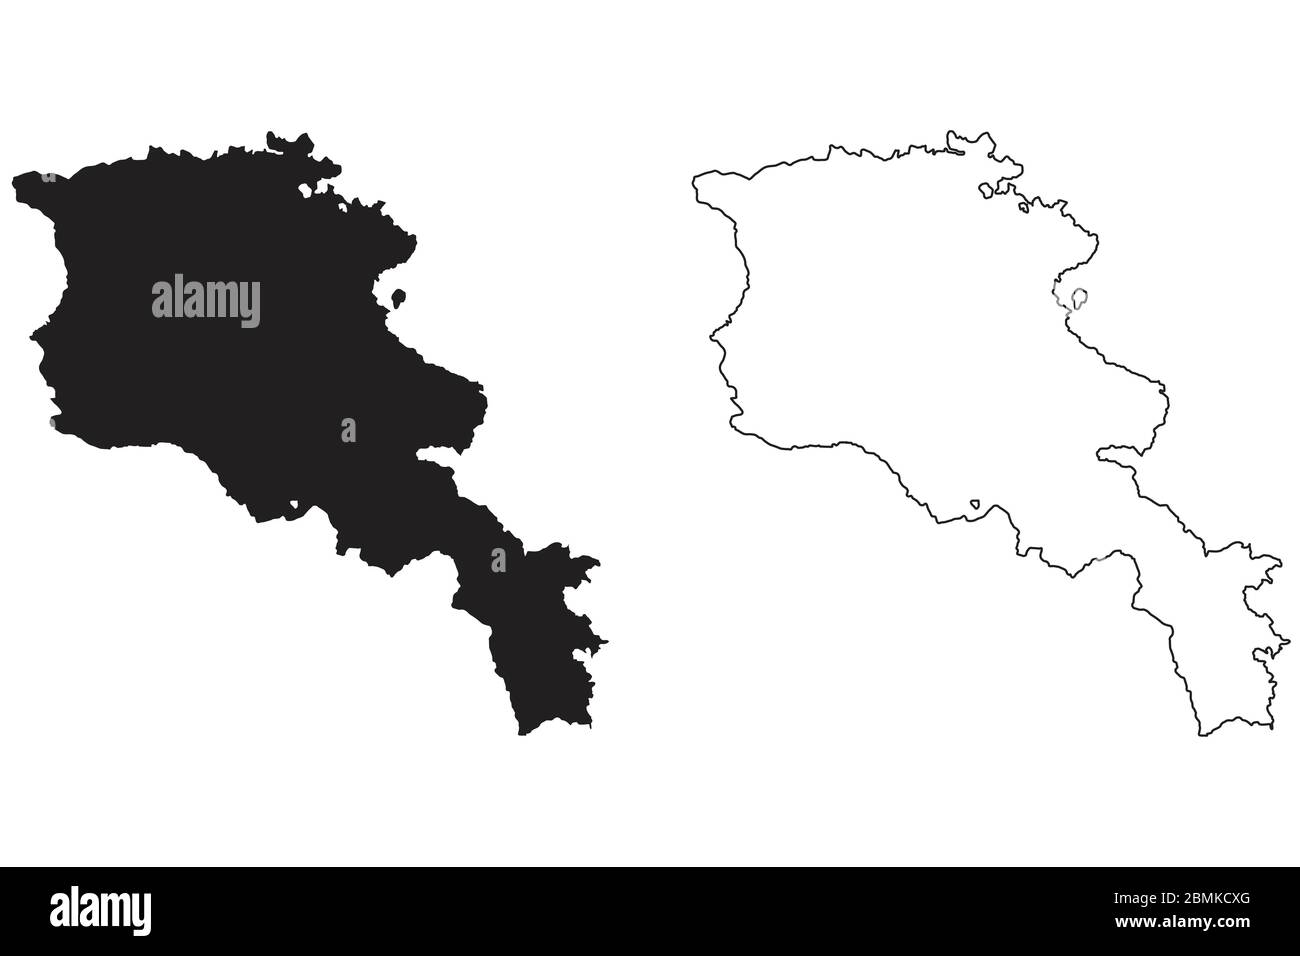 Armenia Mappa di Paese. Silhouette e profilo neri isolati su sfondo bianco. Vettore EPS Illustrazione Vettoriale